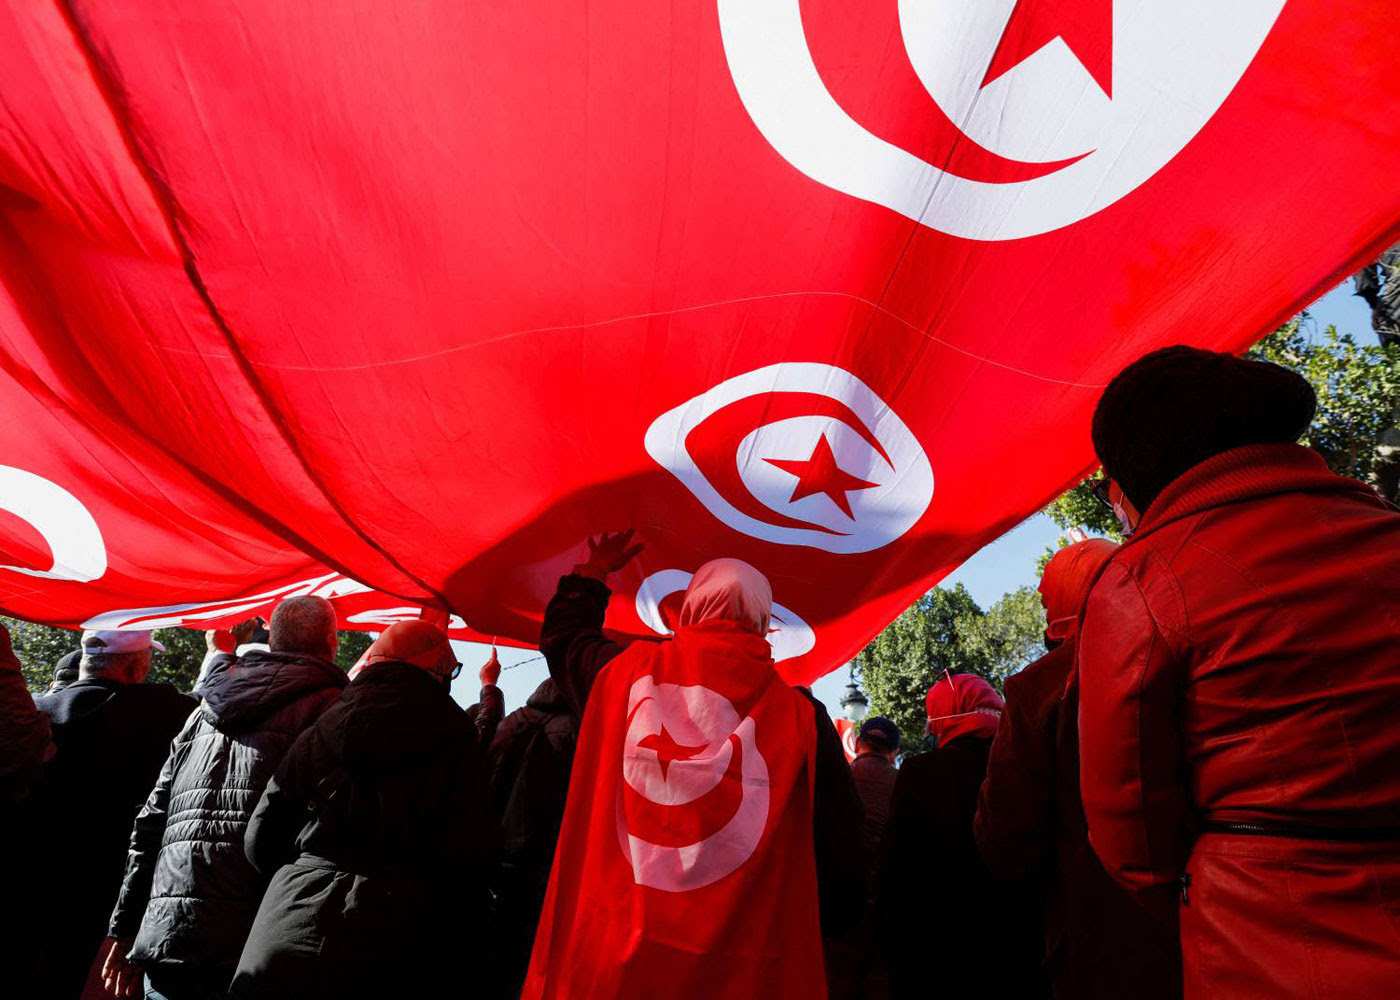 الباحثة التونسية زهية جويرو: من حق النساء اليوم إعادة تأويل القرآن